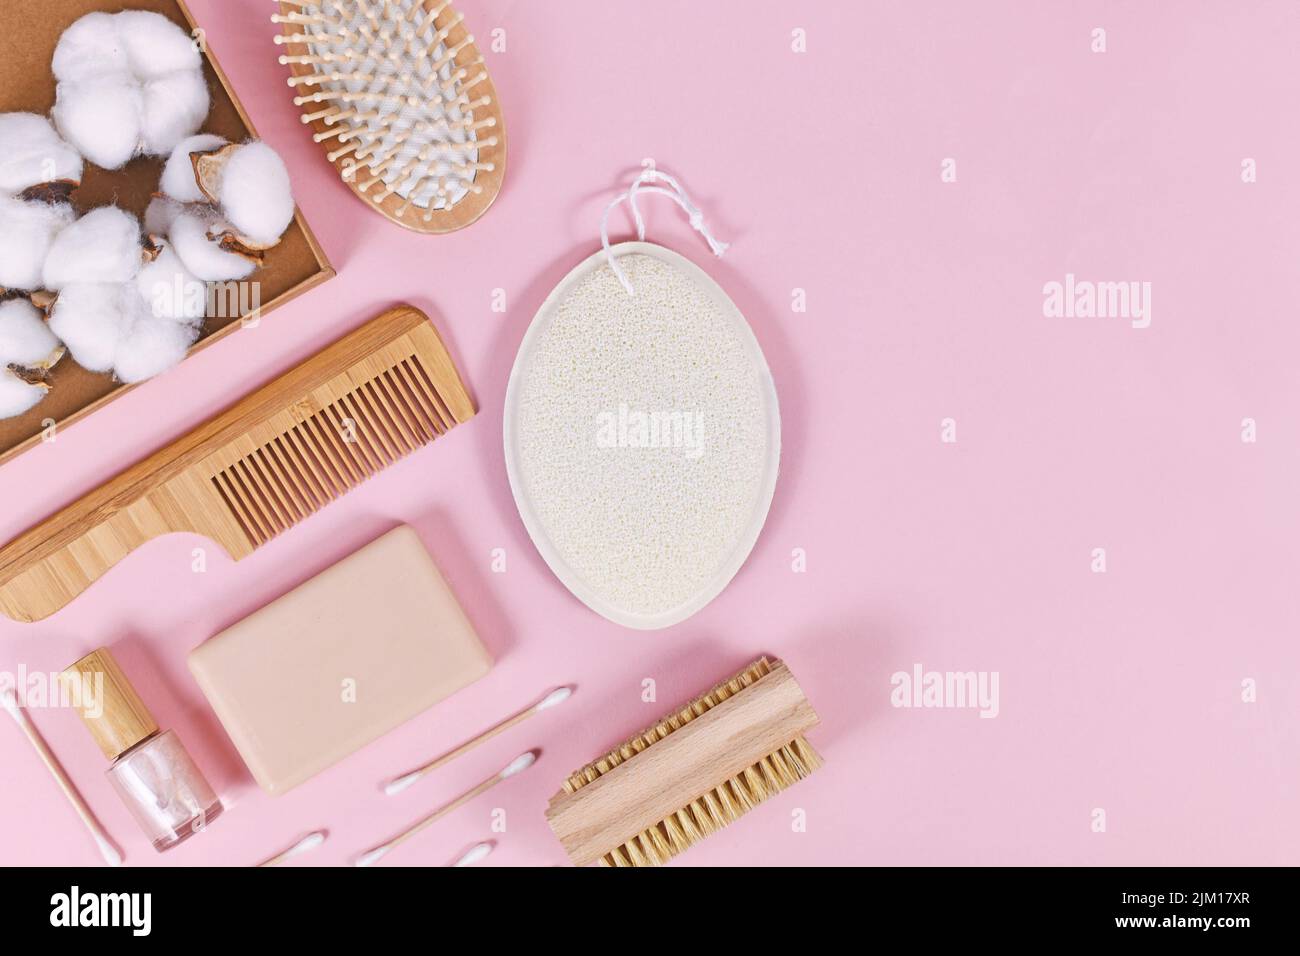 Prodotti ecologici per la bellezza e l'igiene del legno come pettine e sapone su sfondo rosa Foto Stock